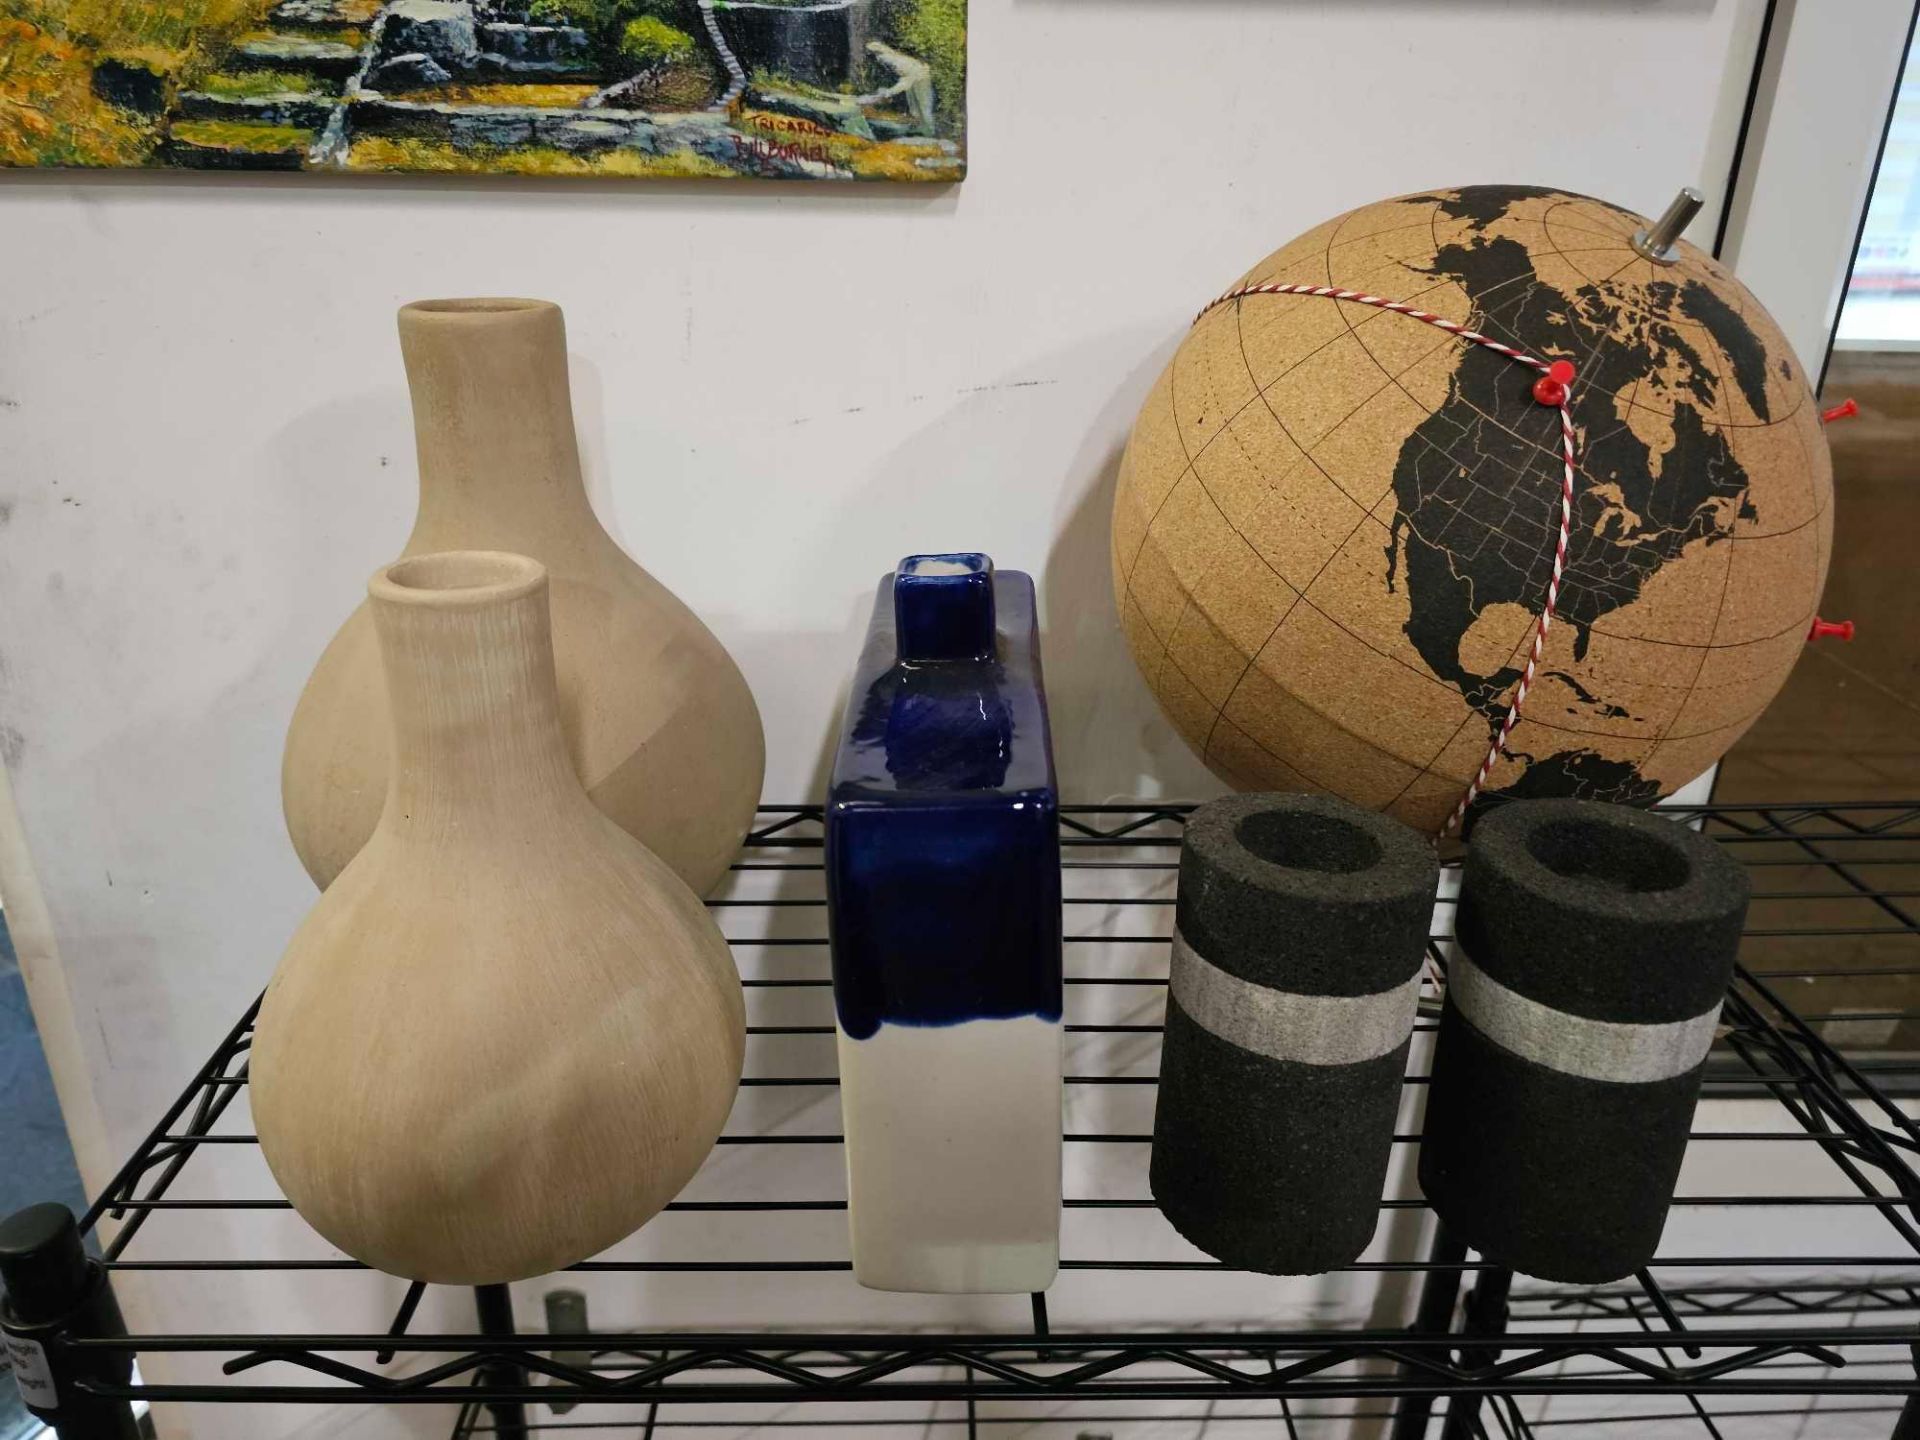 Decorative Objects To Include A Cork Globe Chiaki Kawakami Made By Suck UK, A Zara Home Indigo